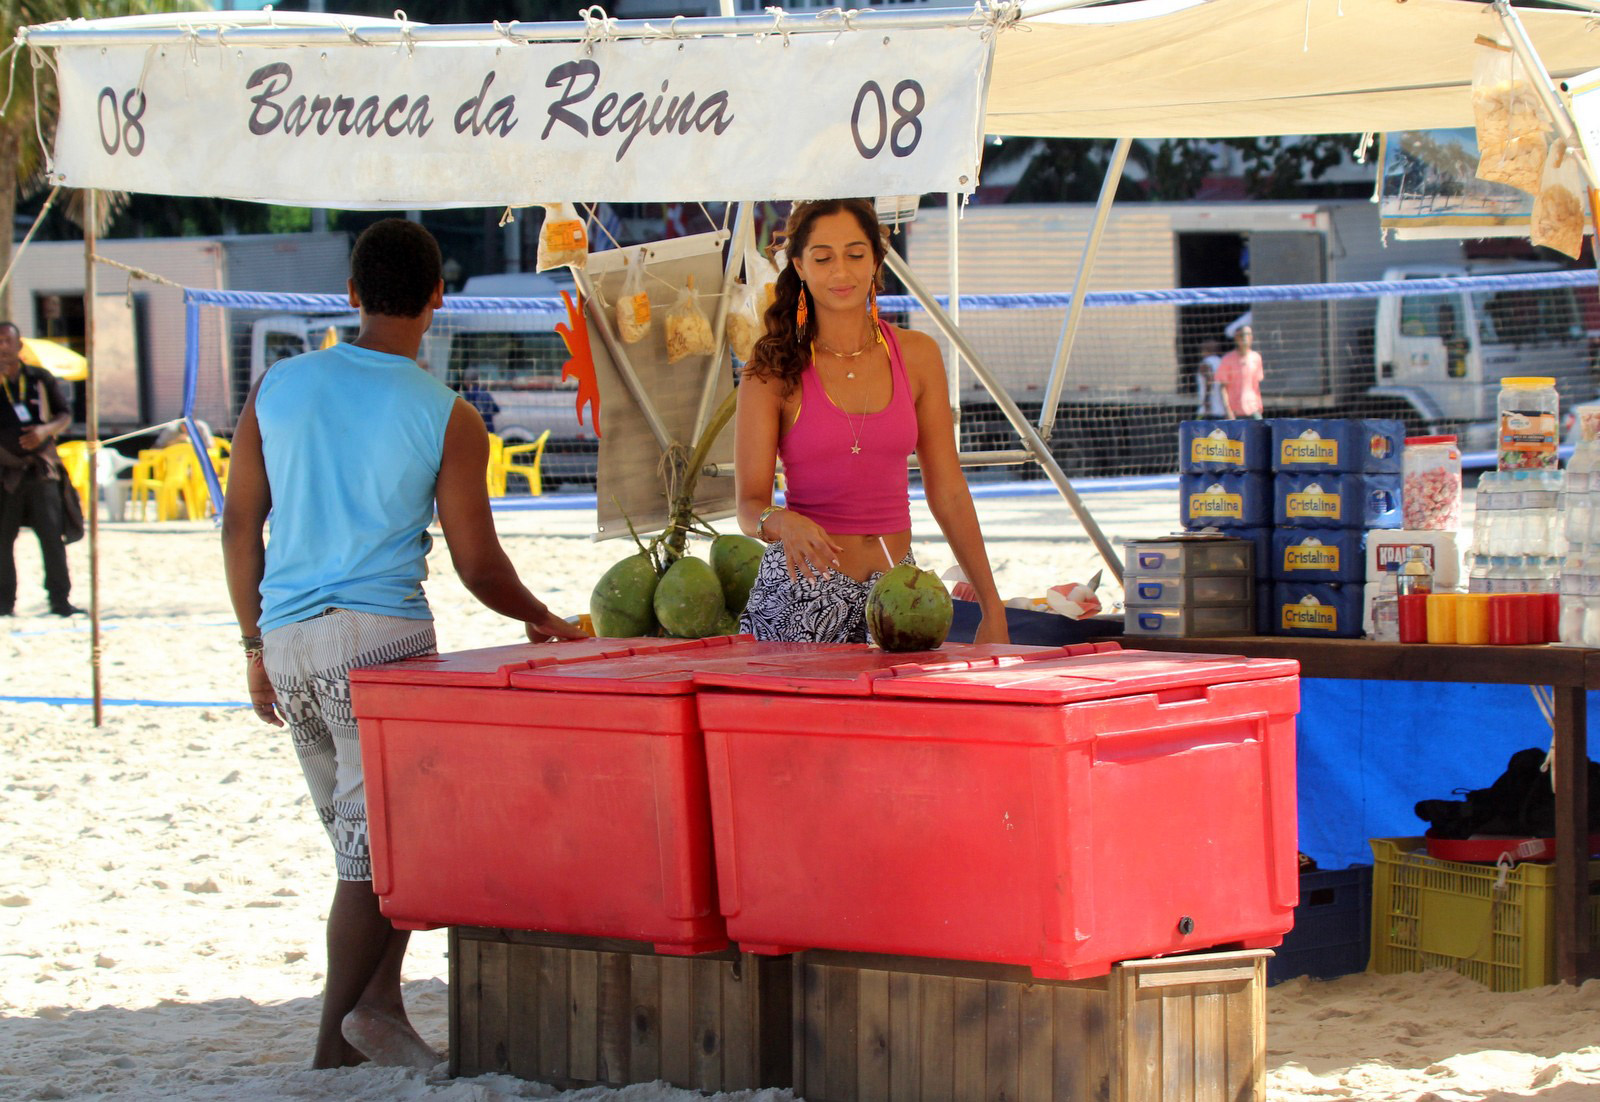 Camila Pitanga grava em barraca de praia carioca